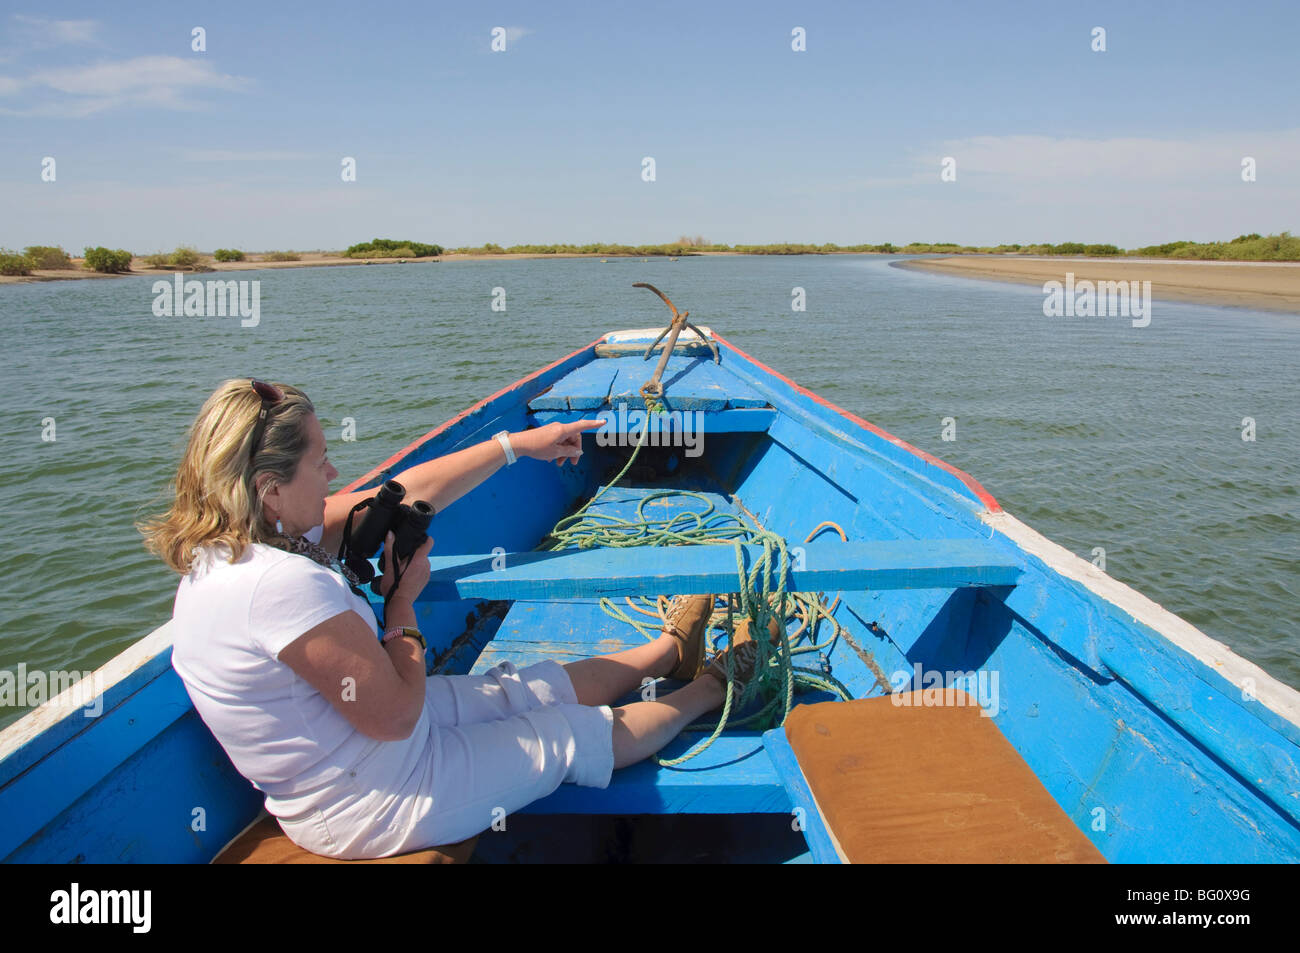 Aviturismo turístico de piragua o embarcación de pesca en los remansos del Sine Saloum delta, Senegal, África occidental, África Foto de stock